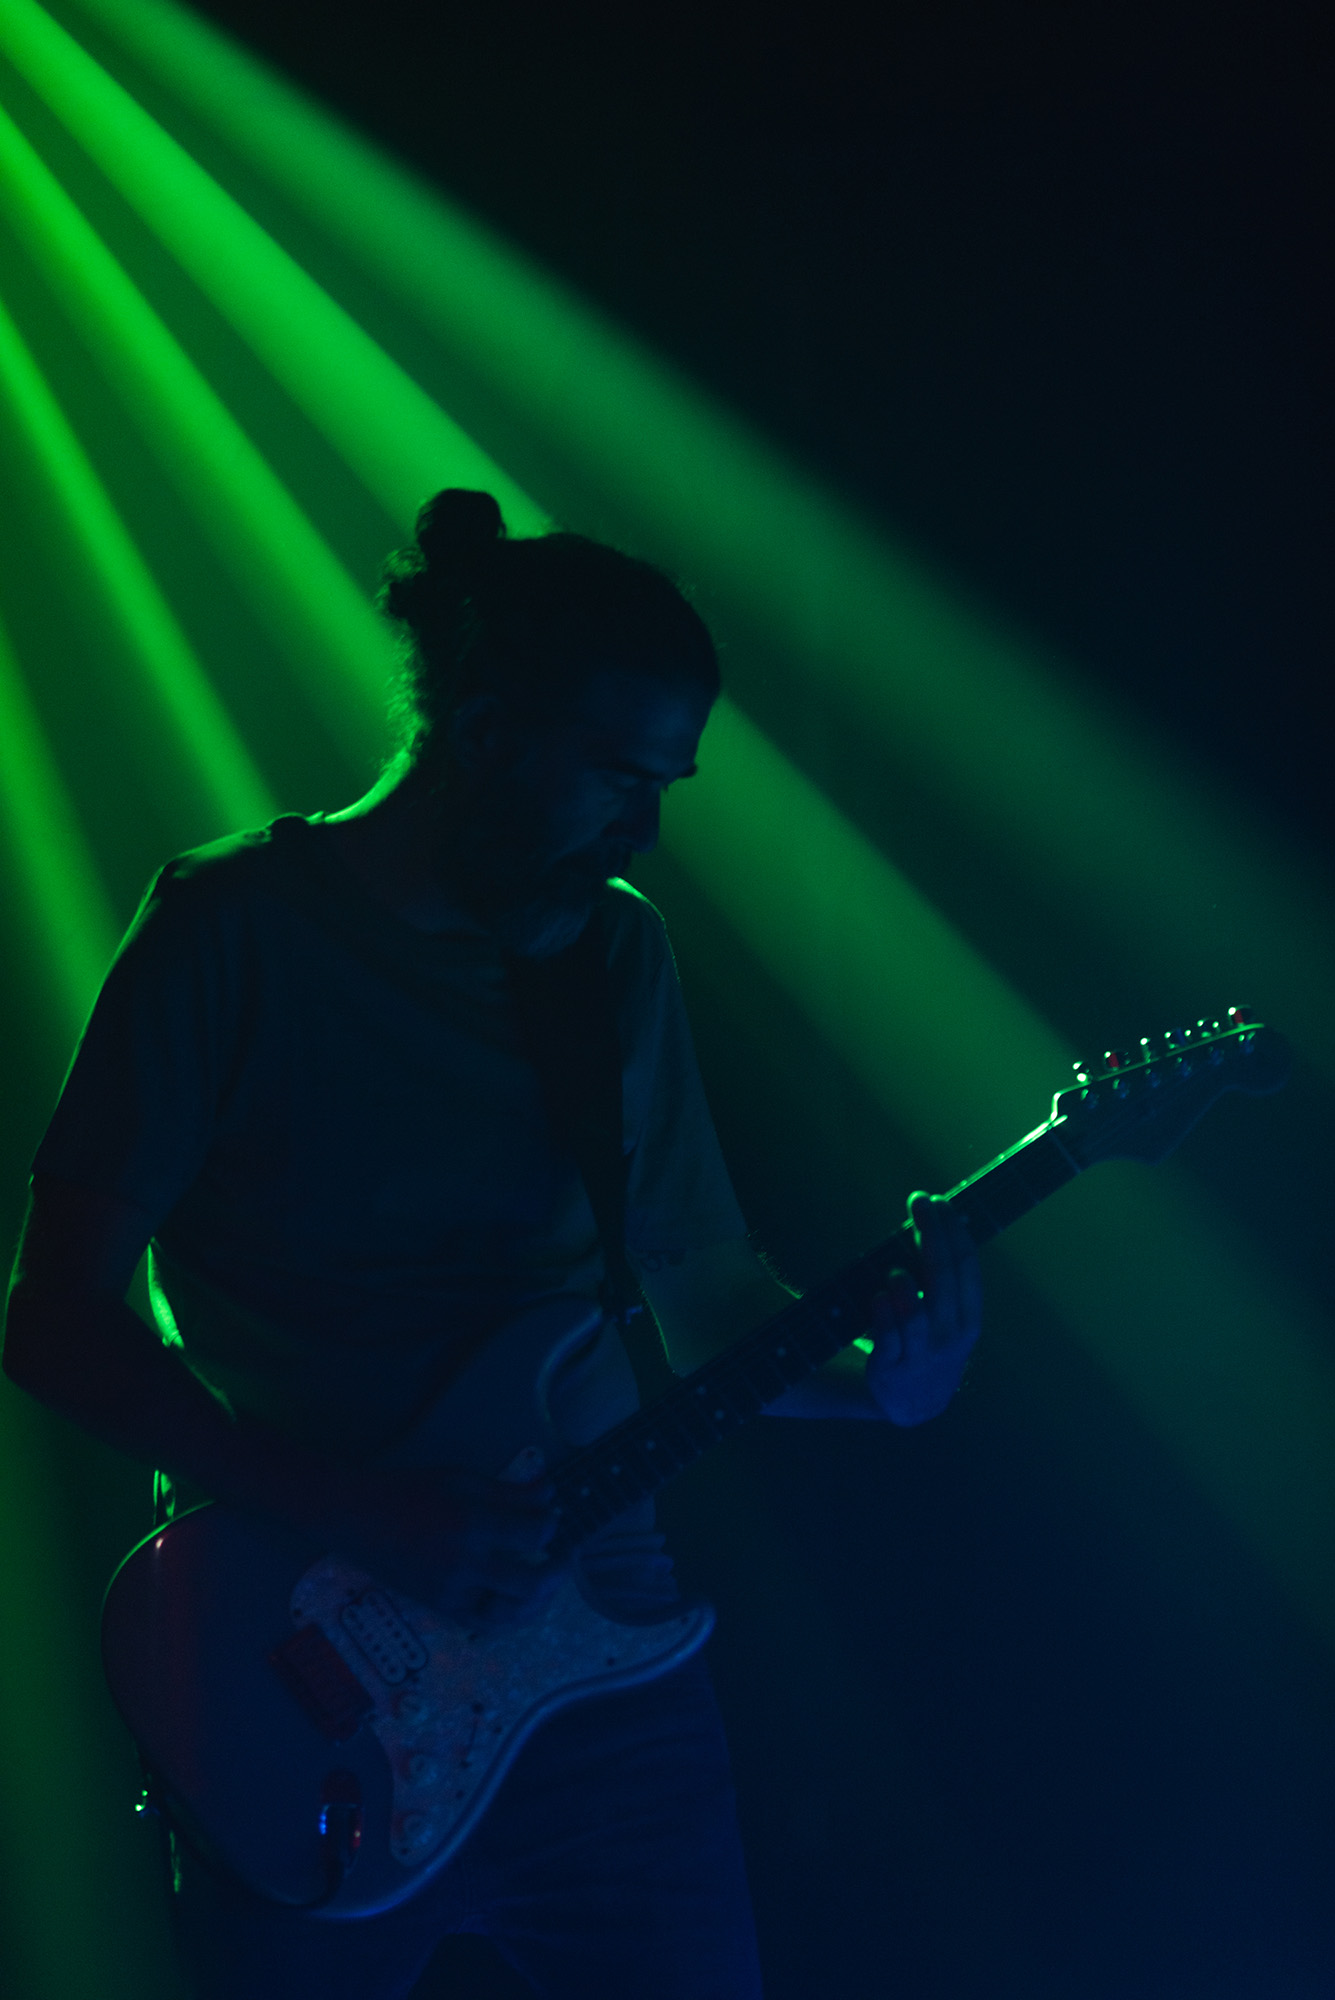 Guitarrista tocando a oscuras con un foco de luz verde sobre él